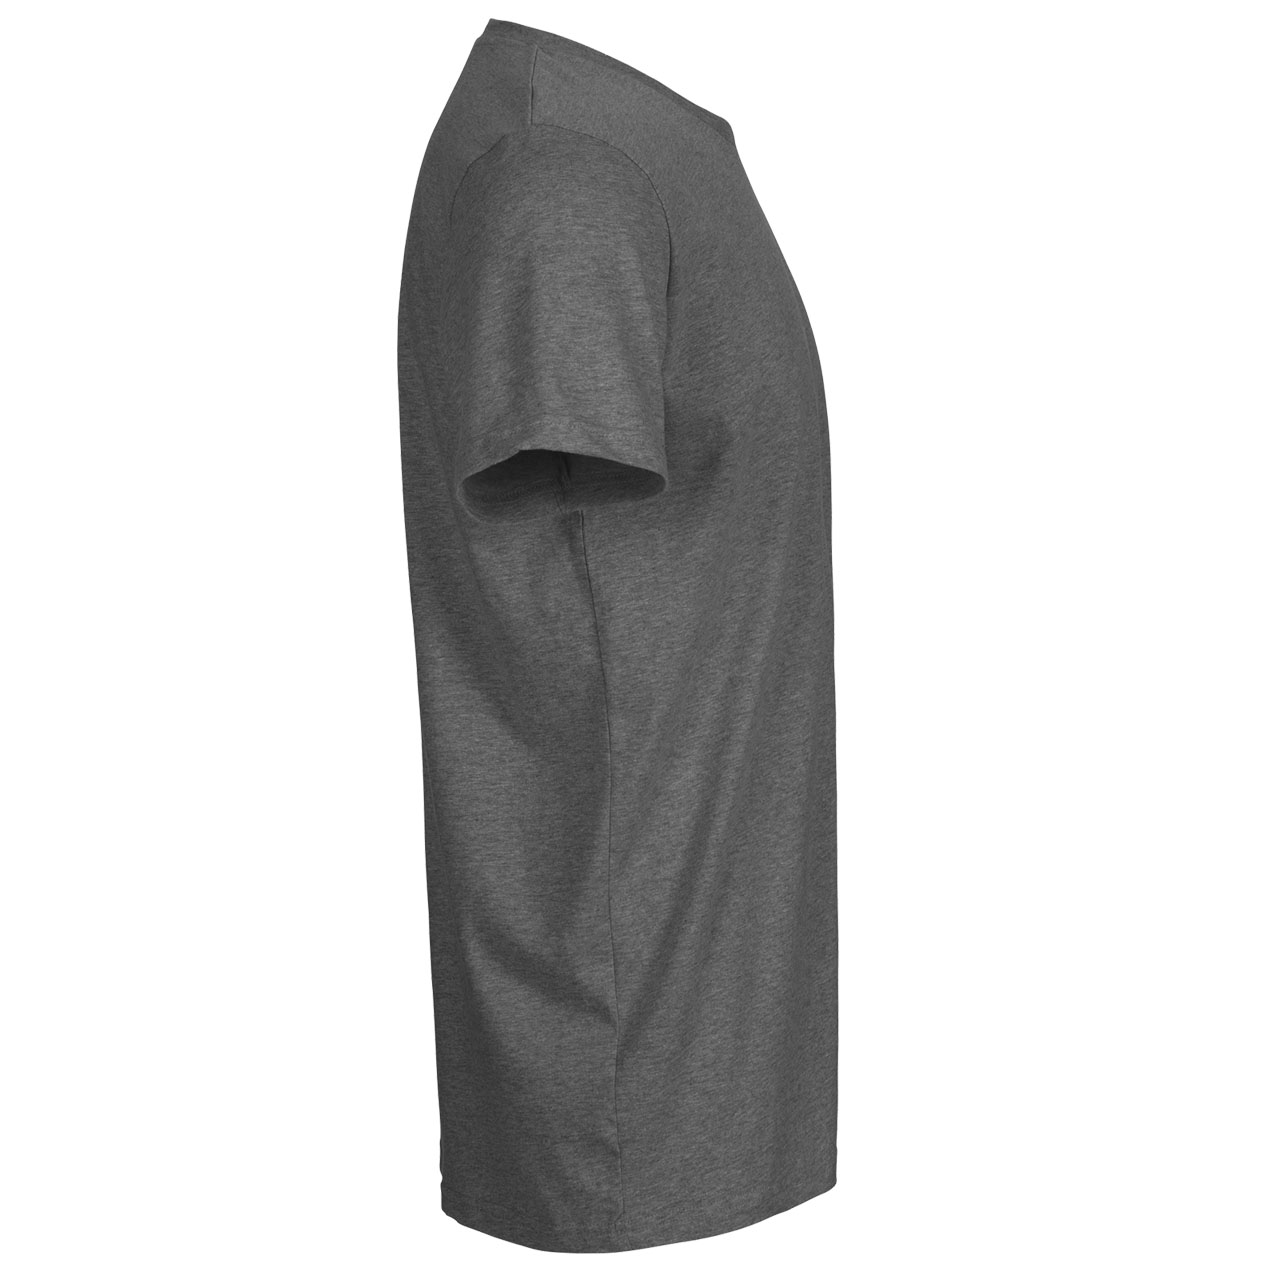 Doppelpack Neutral® Mens Fit T-Shirt - Bio-Baumwolle Dark Heather M Dark Heather